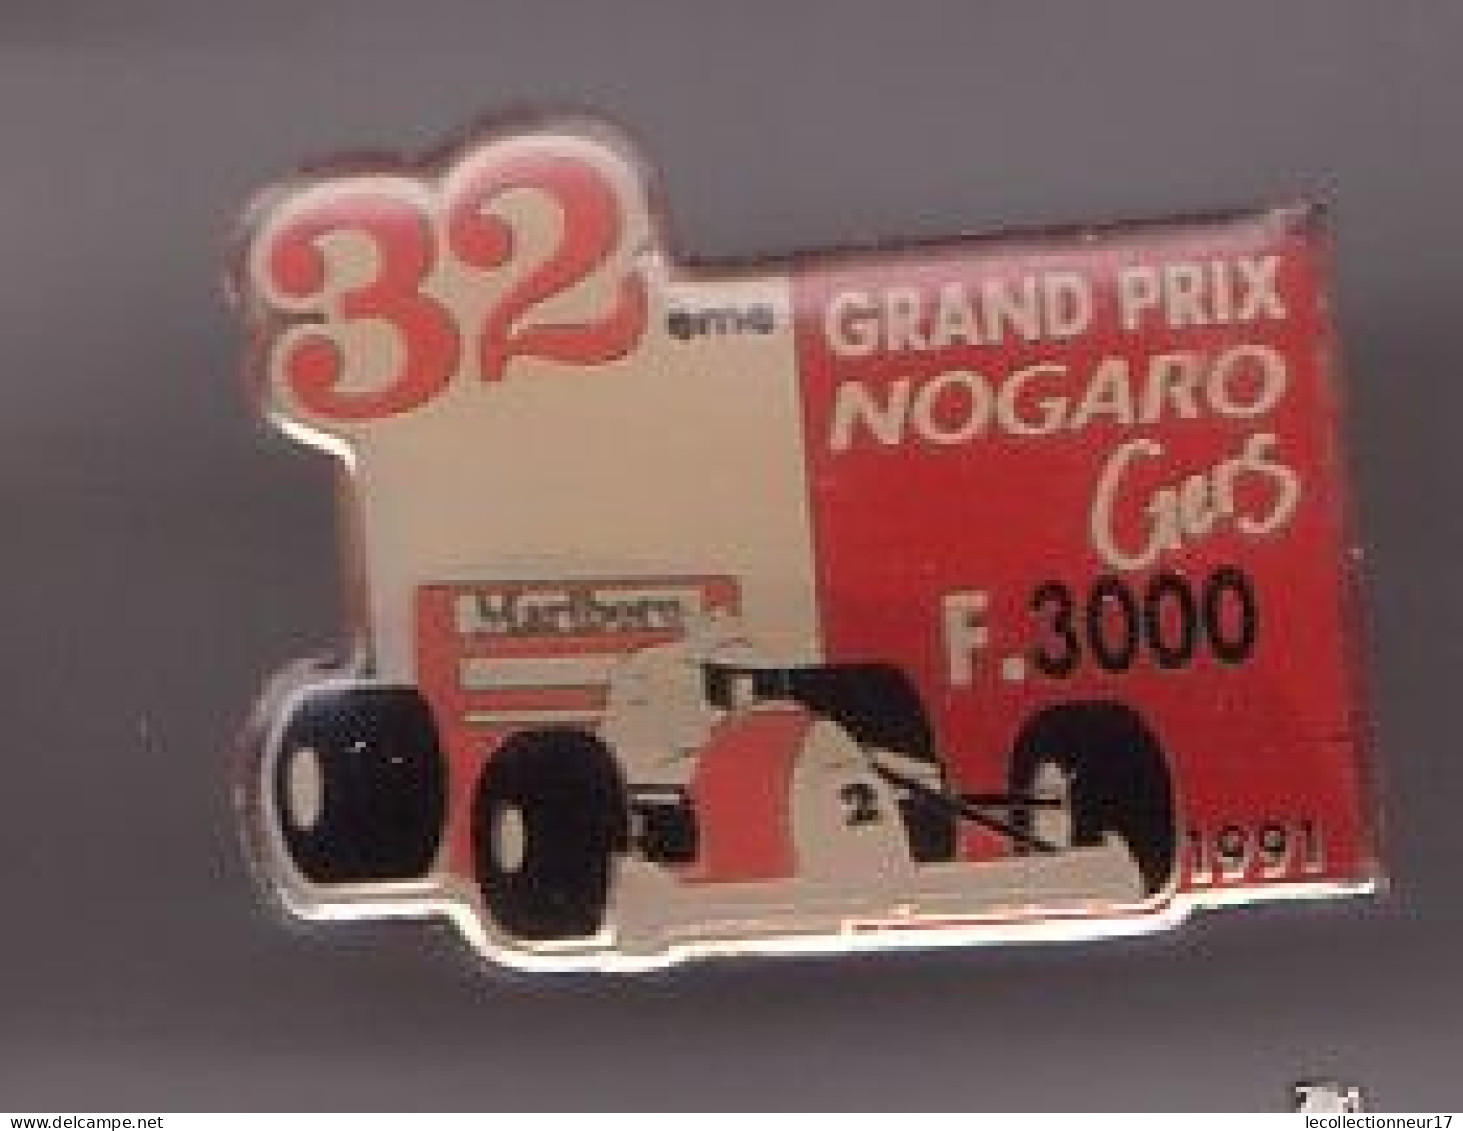 Pin's 32 ème Grand Prix Nogaro Gers F3000 Malboro  Réf 644 - F1